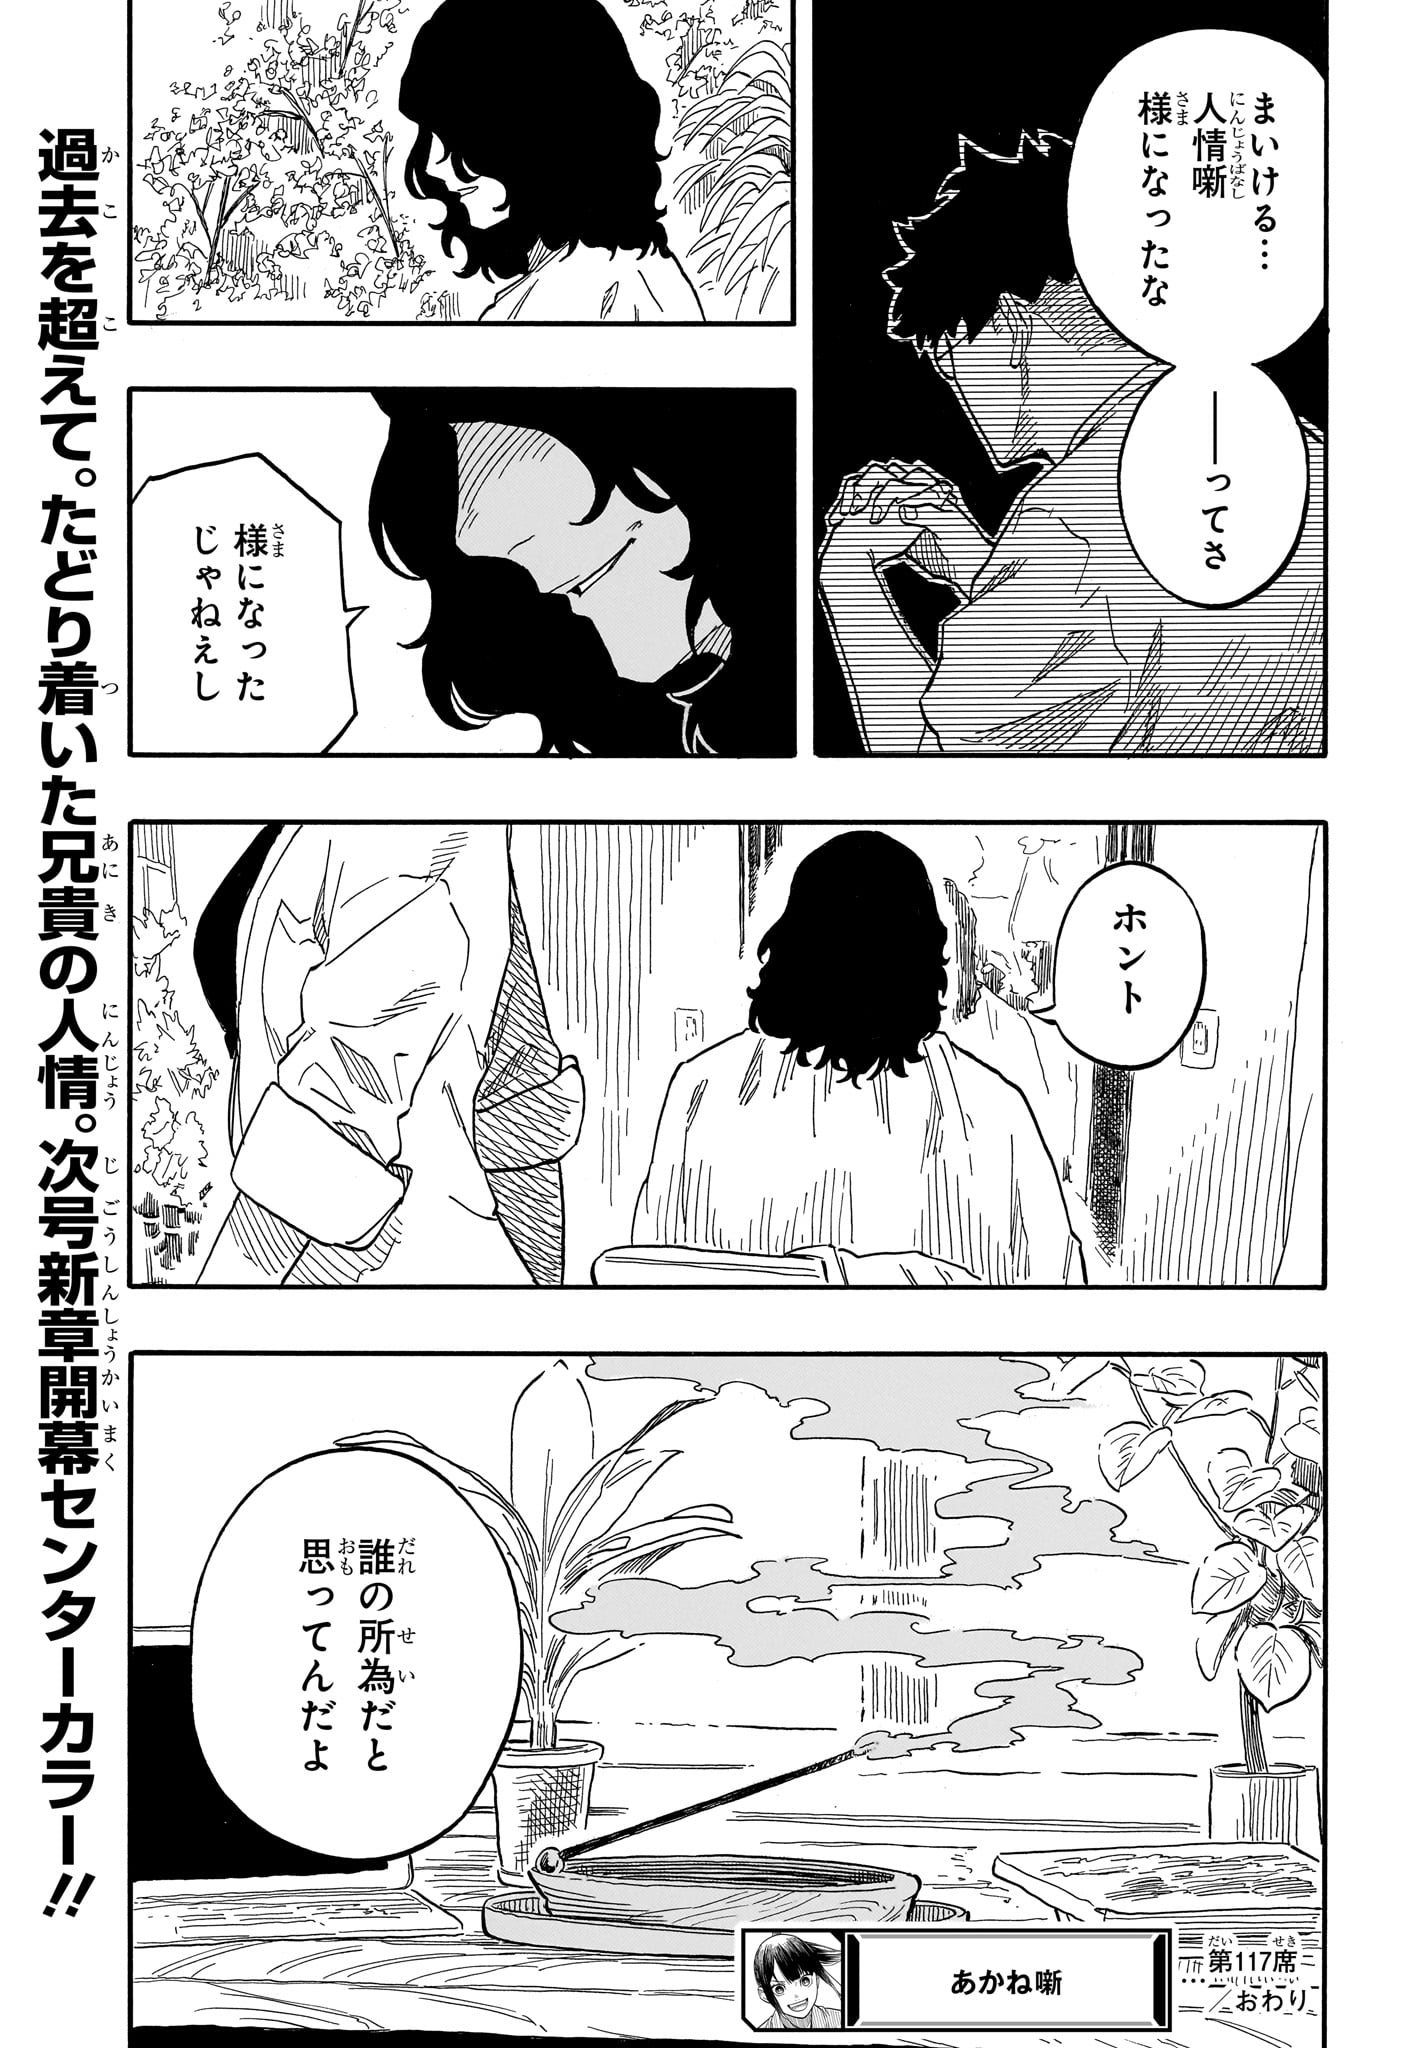 Akane-Banashi - Chapter 117 - Page 19